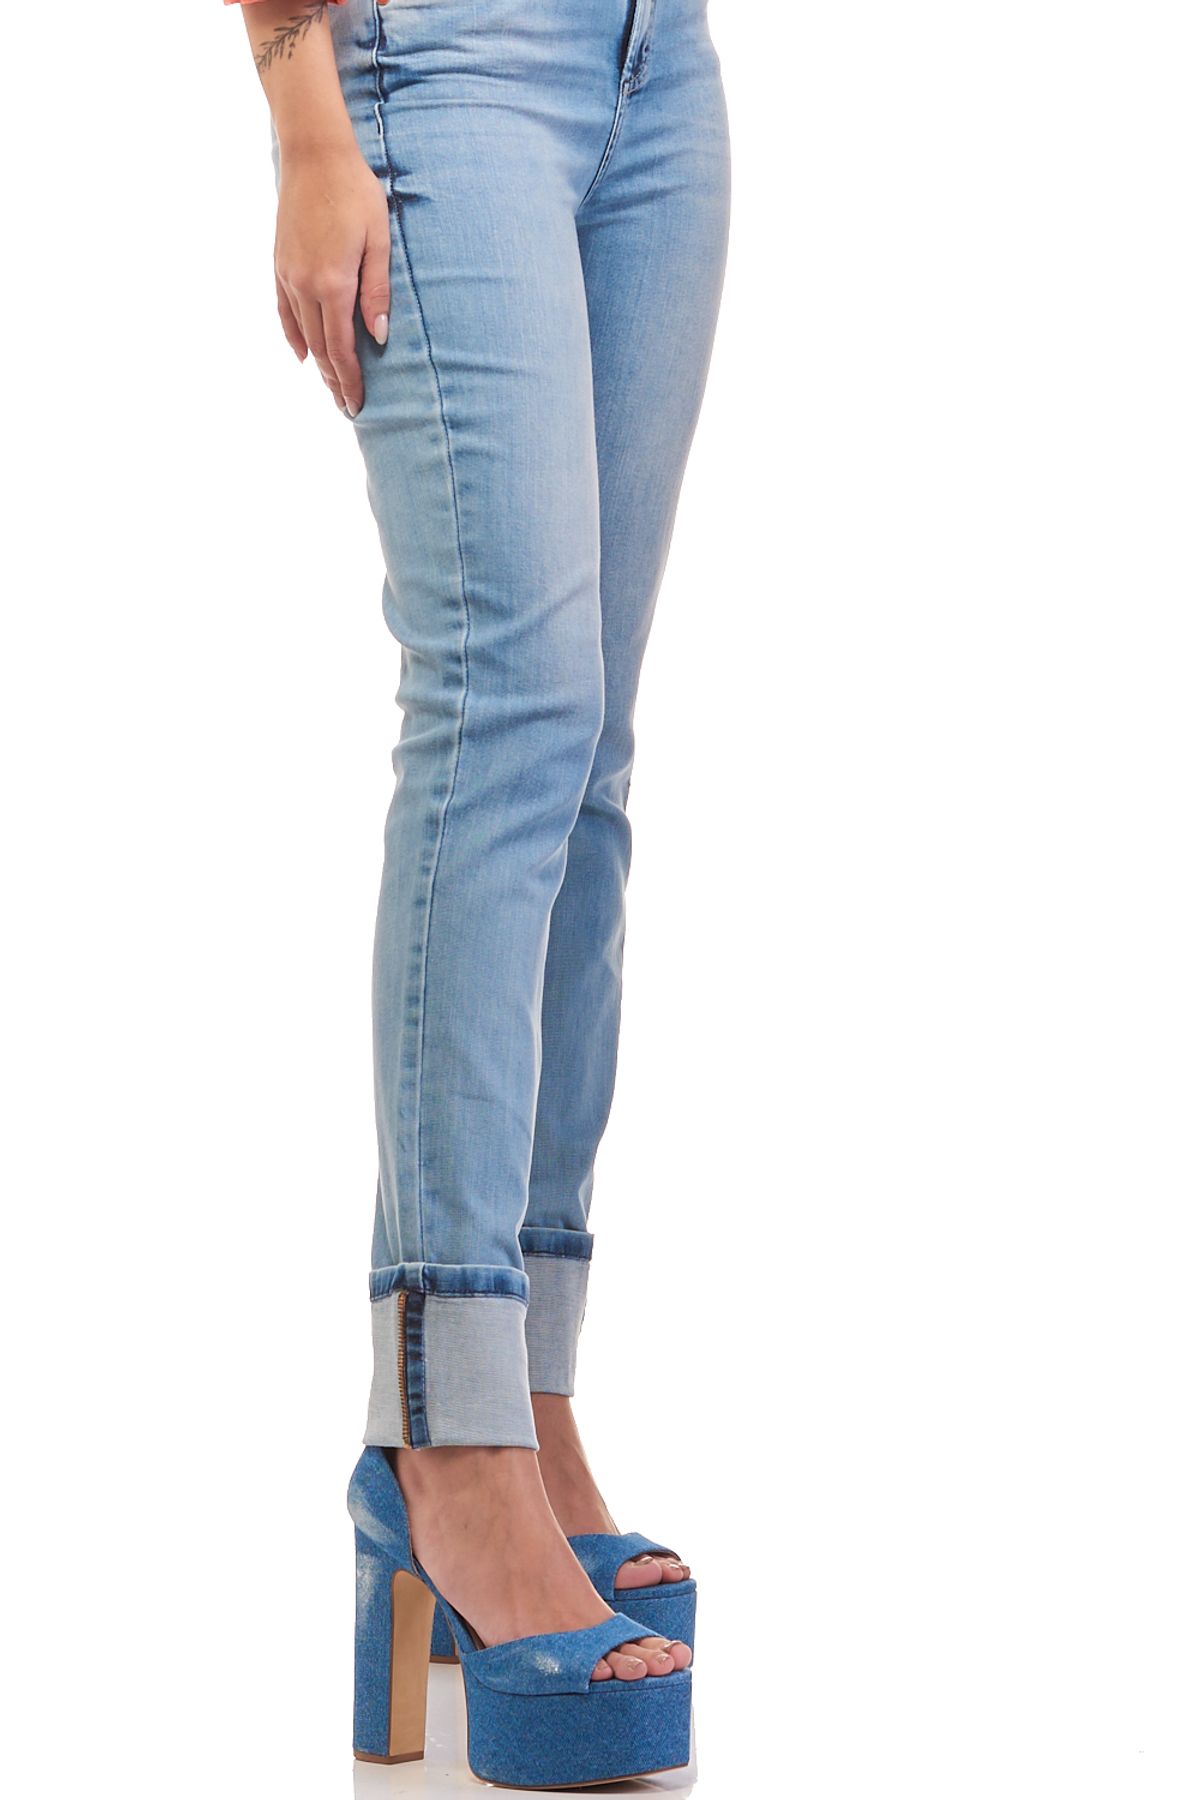 Calça Patogê feminina boot cut jeans cintura alta (G4) CL37033